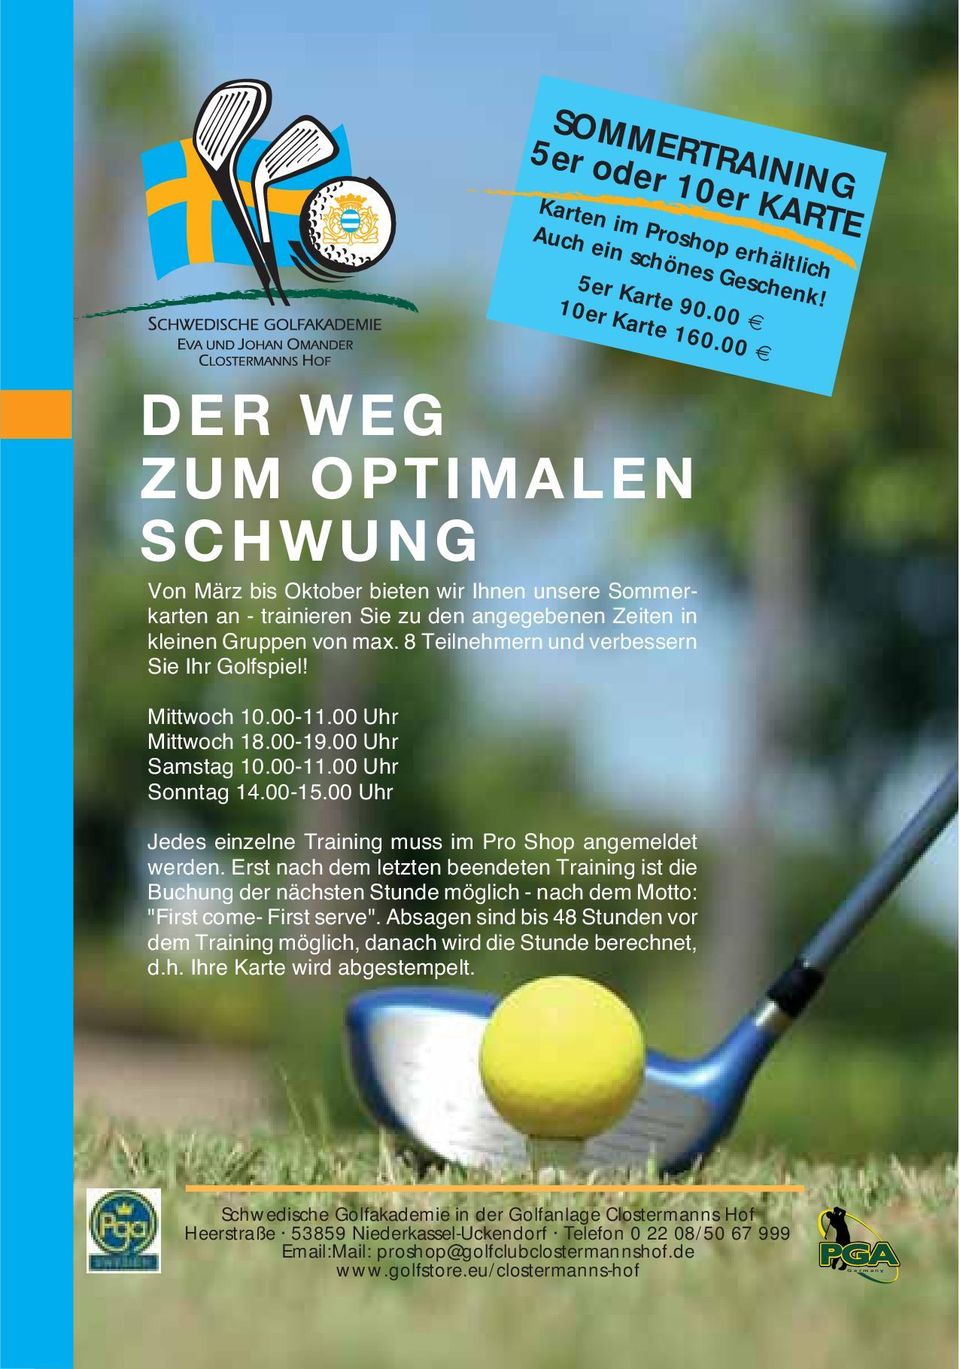 8 Teilnehmern und verbessern Sie Ihr Golfspiel! Mittwoch 10.00-11.00 Uhr Mittwoch 18.00-19.00 Uhr Samstag 10.00-11.00 Uhr Sonntag 14.00-15.